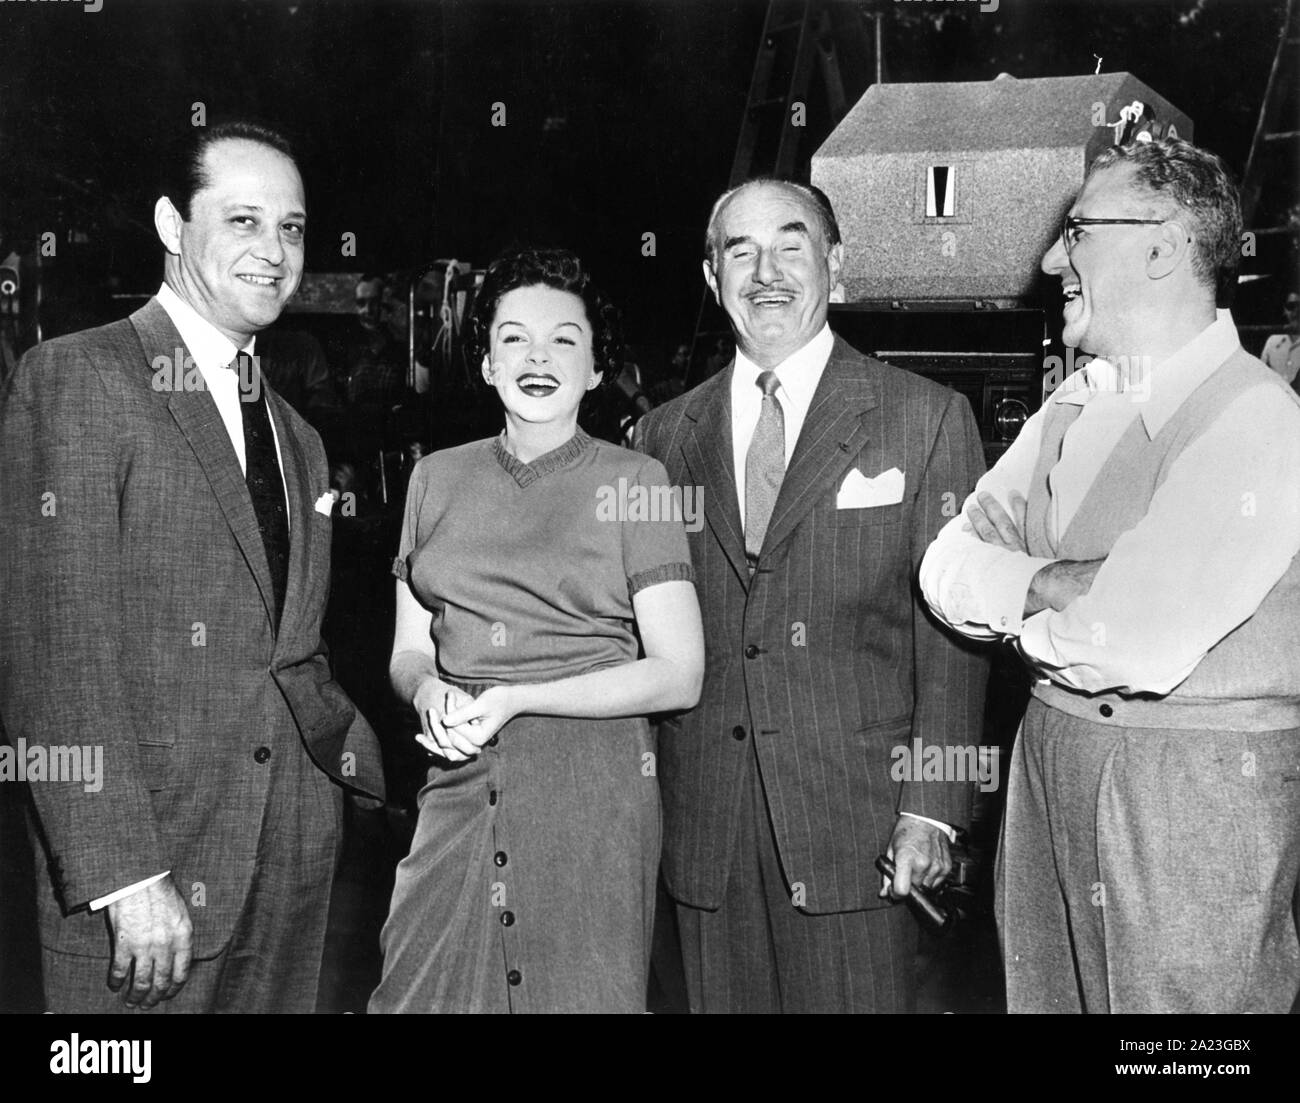 JUDY GARLAND avec troisième mari SID LUFT (à gauche), producteur JACK L. WARNER et réalisateur GEORGE CUKOR sur le plateau de tournage avec franchise UNE ÉTOILE EST NÉE 1954 Entreprises Transcona / Warner Bros. Banque D'Images